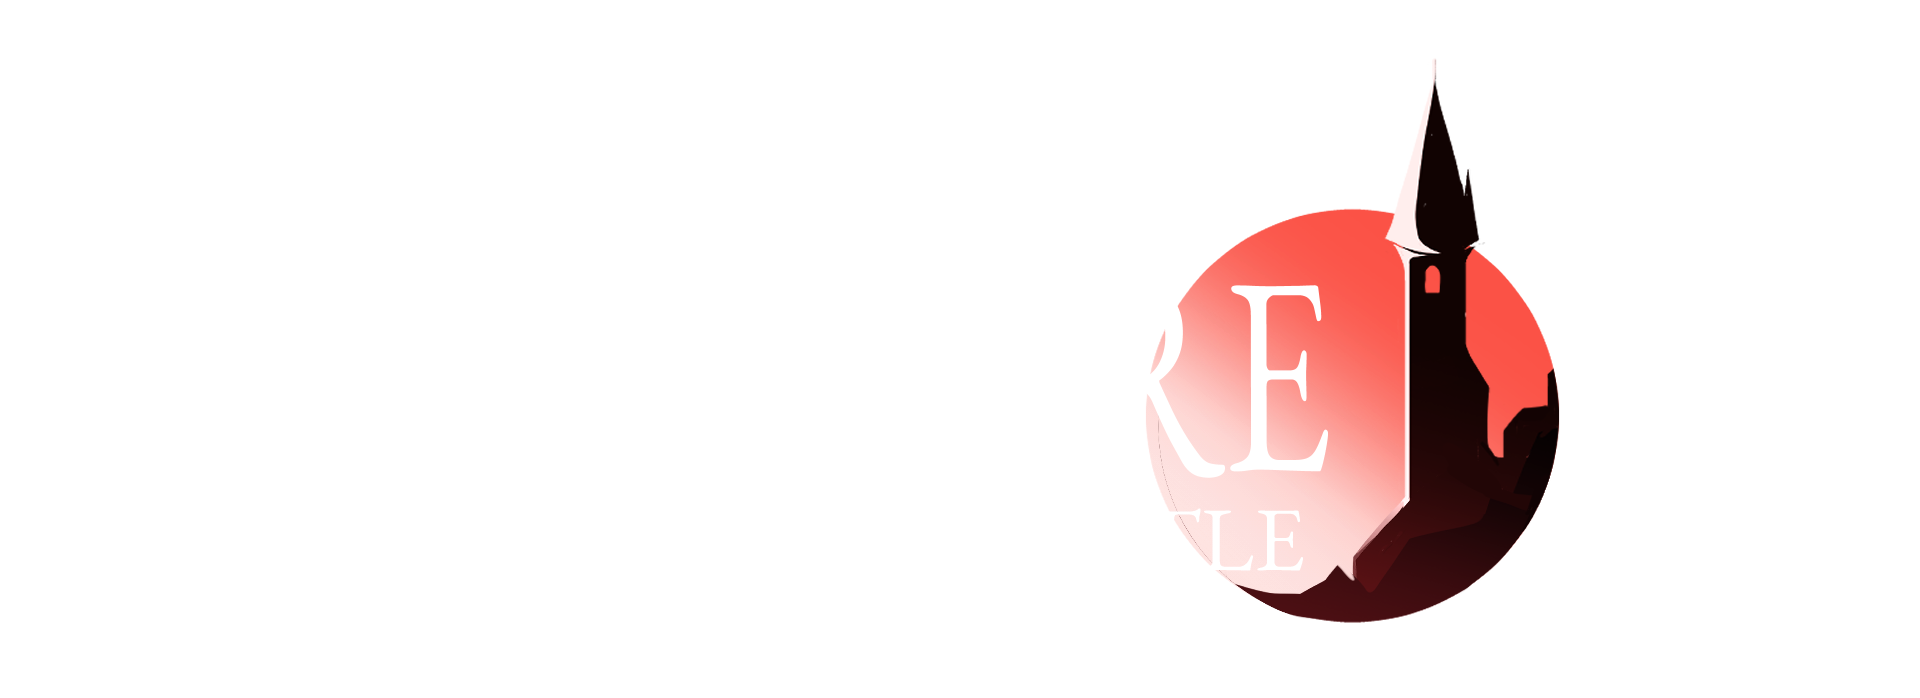 Massacre at High Castle